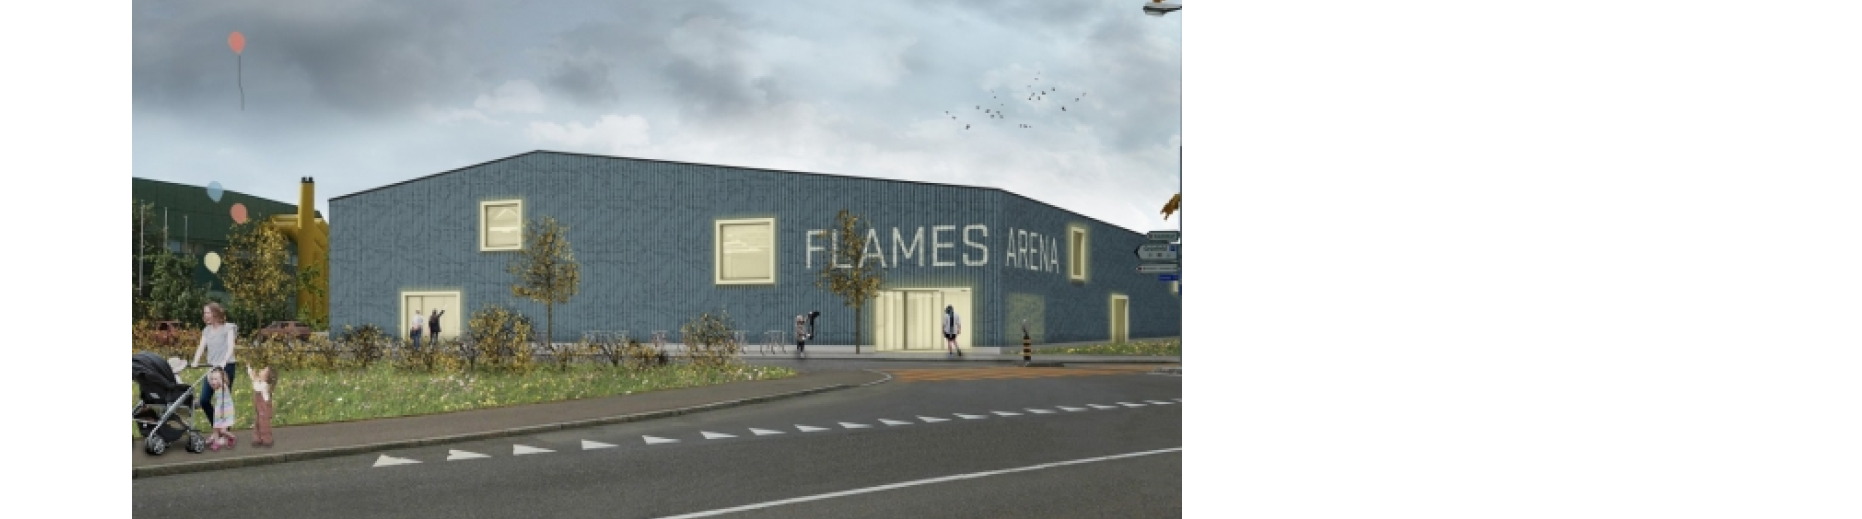 Flames Arena: Baubewilligung liegt vor